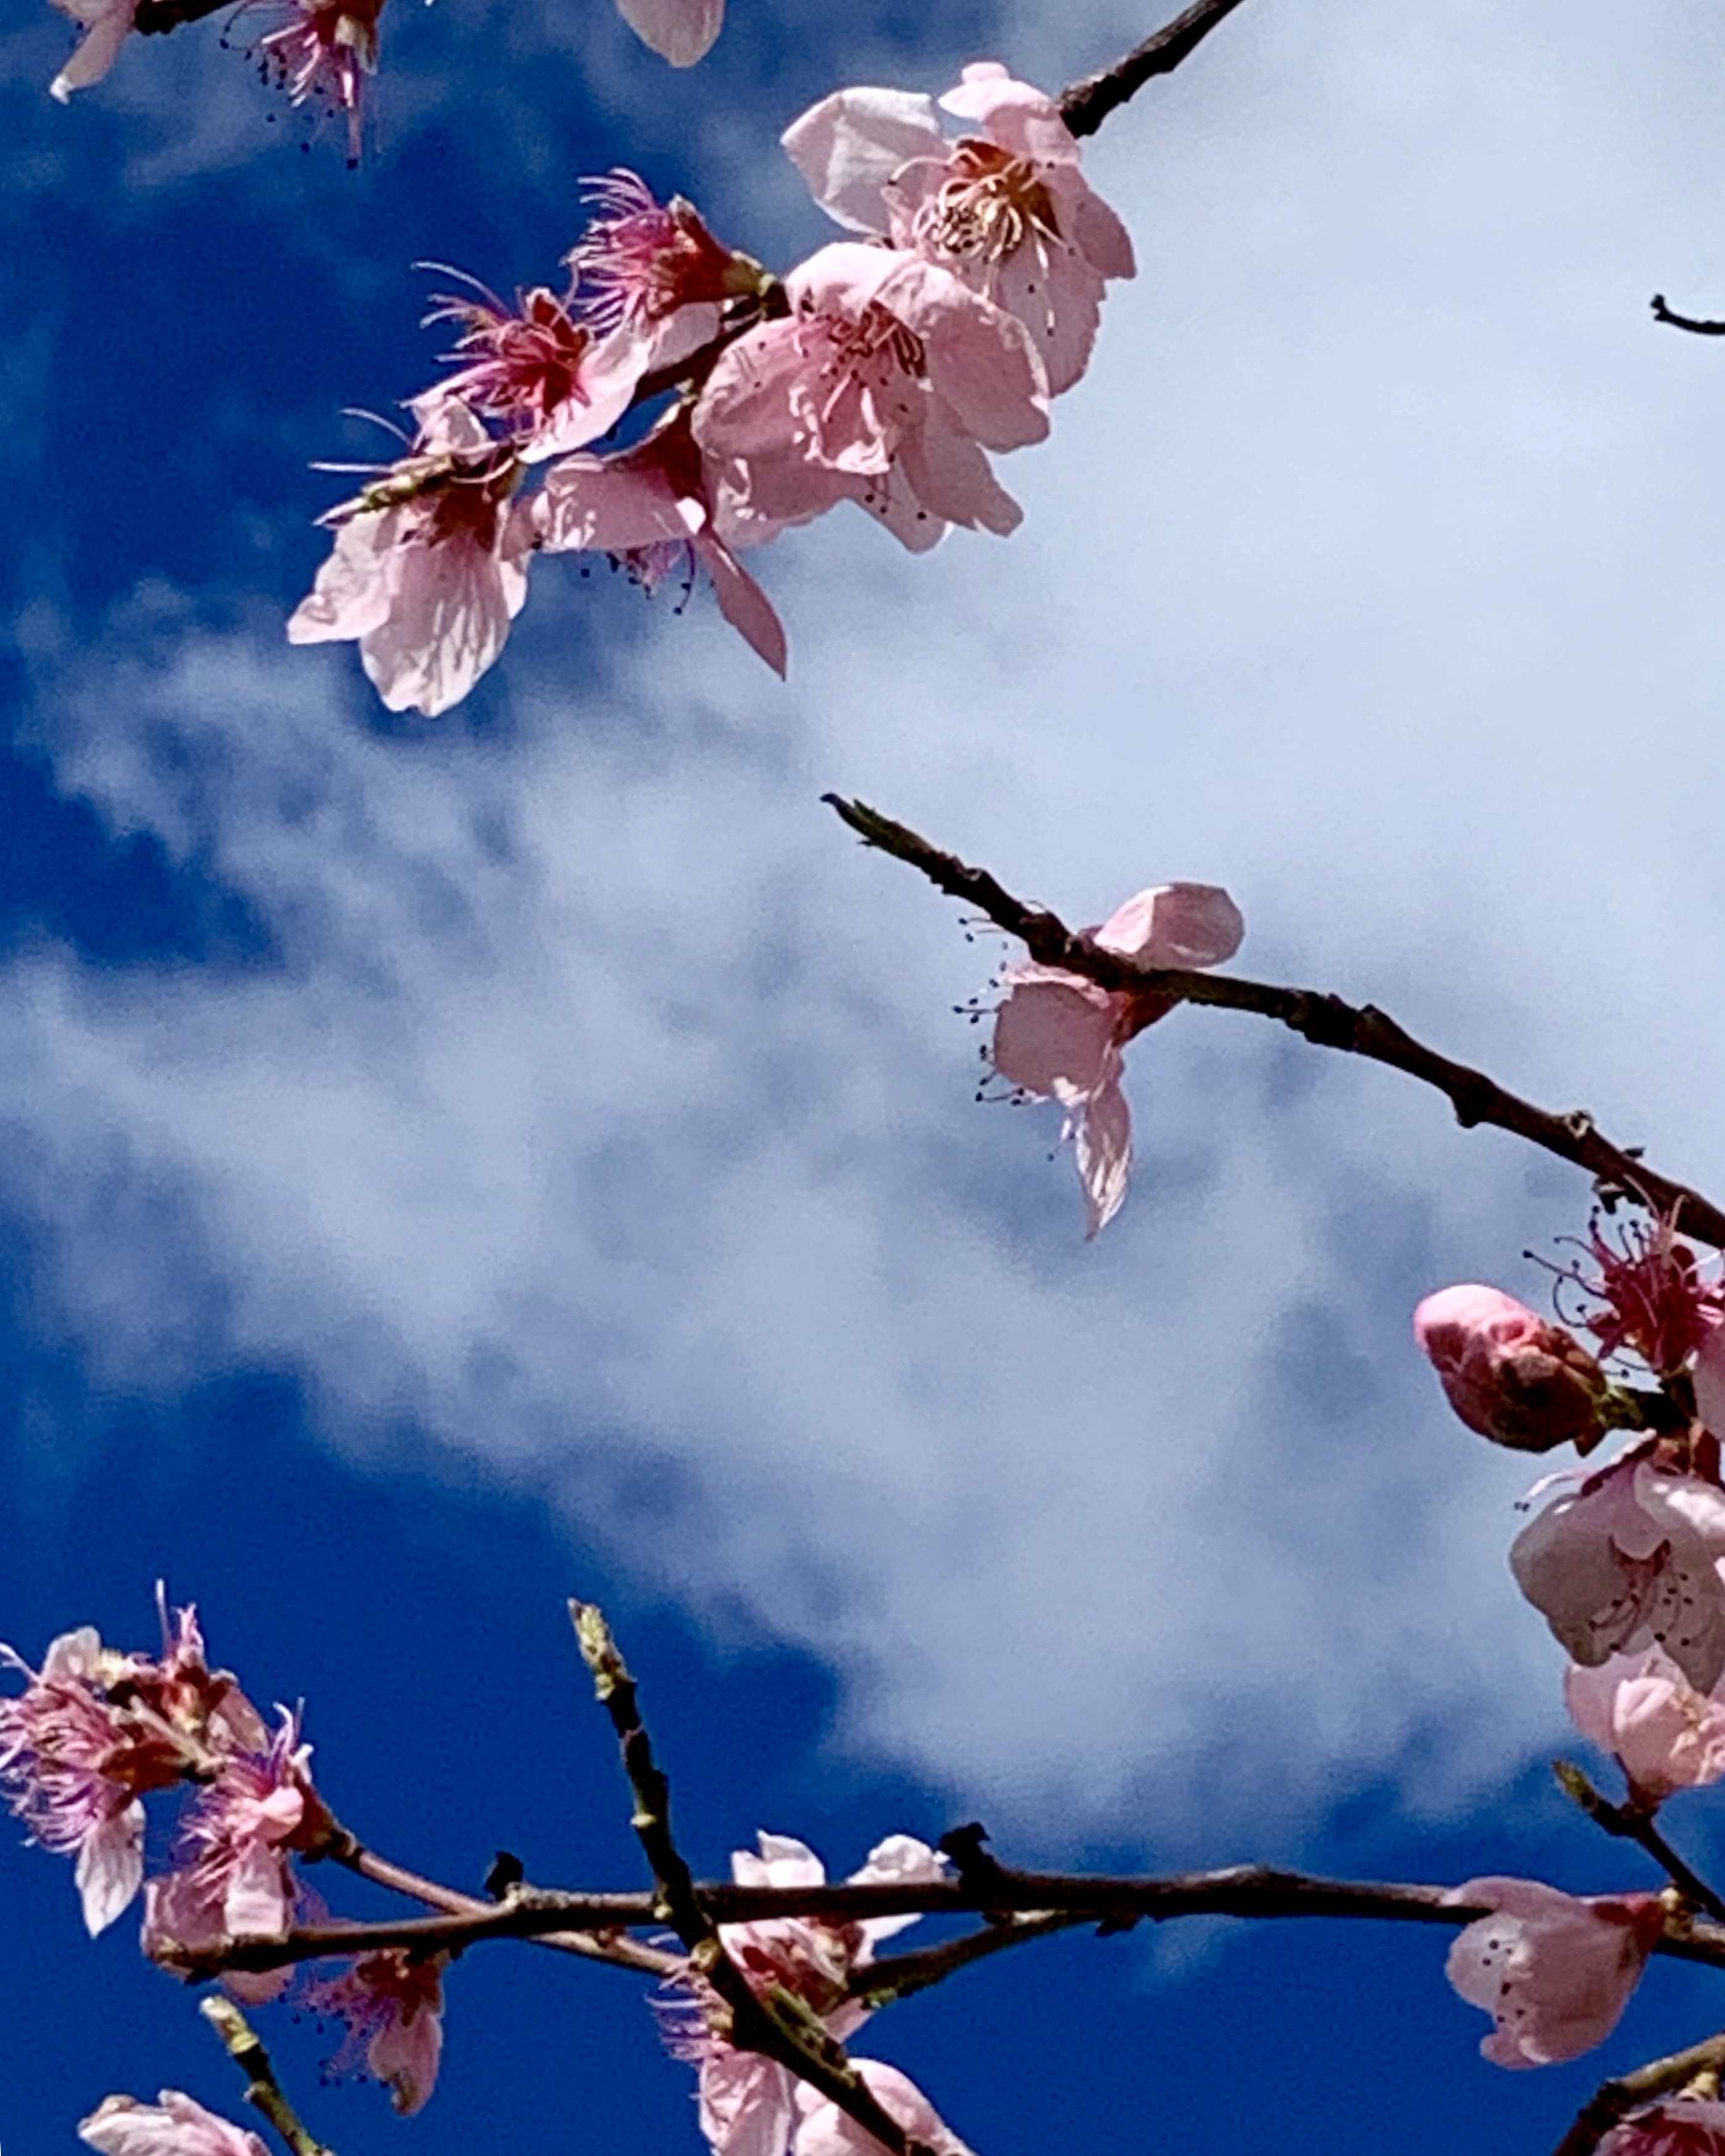 Blossom and blue sky